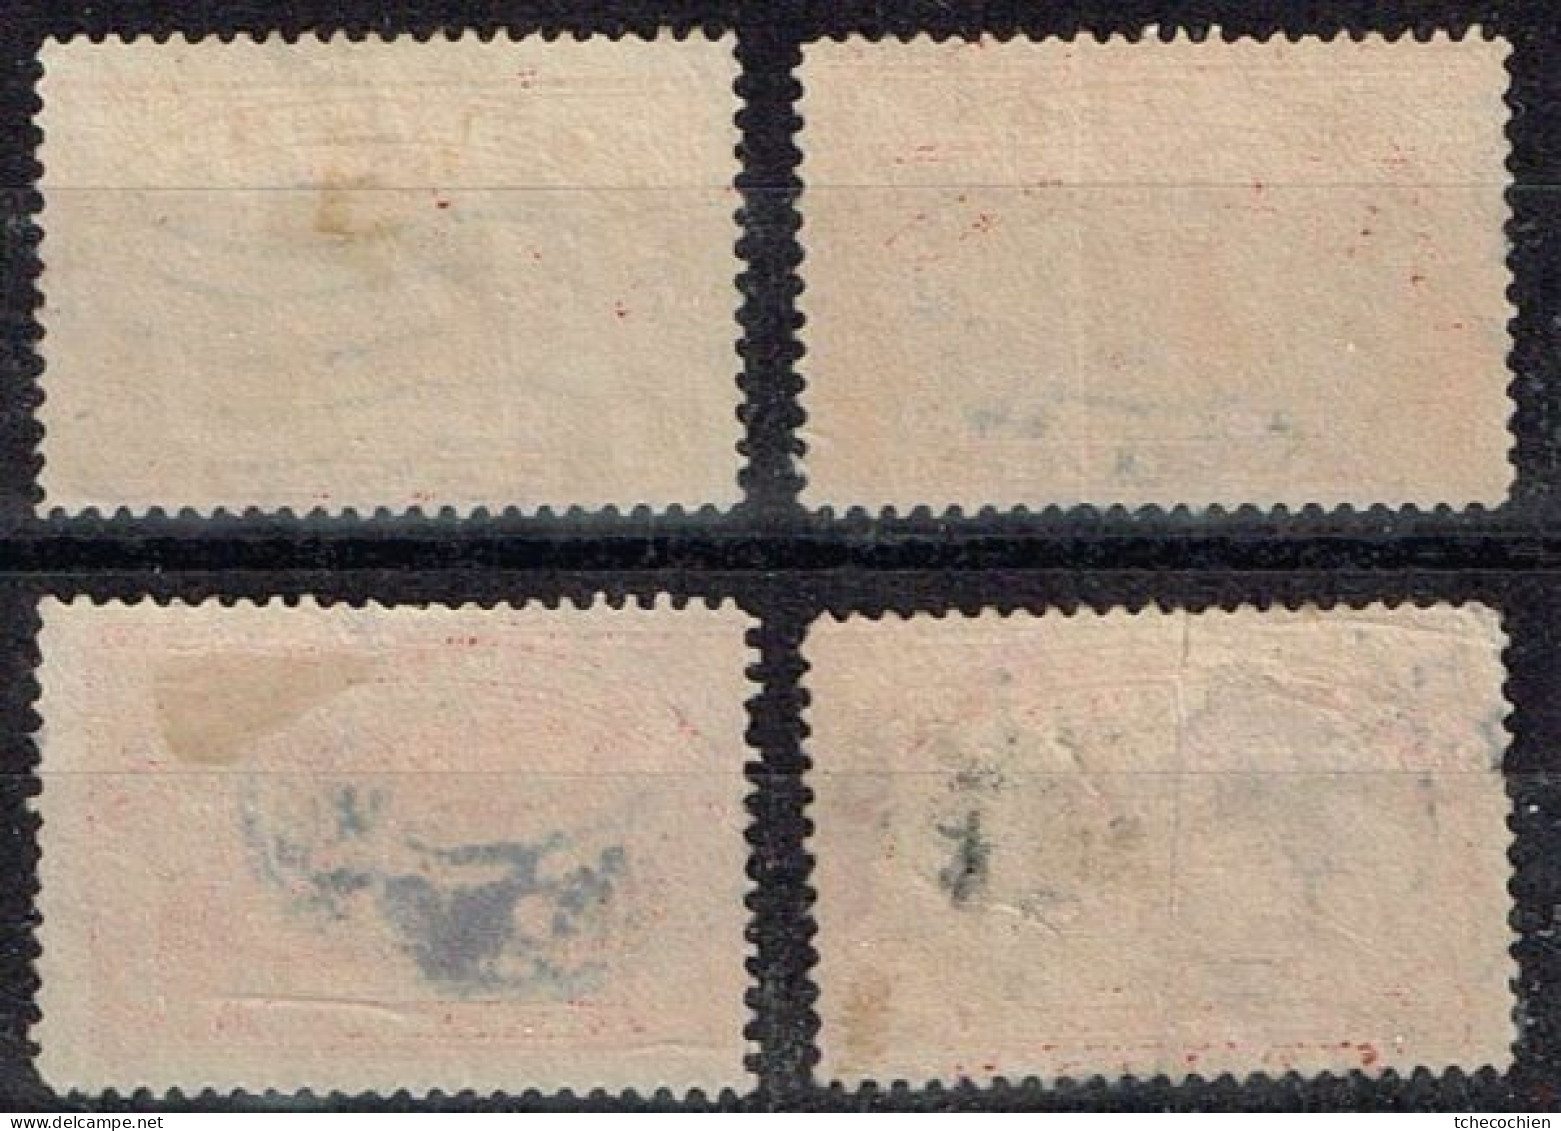 Etats-Unis - 1912 - Colis-Postaux N° 1 à 3, 5 Oblitérés - Used Stamps